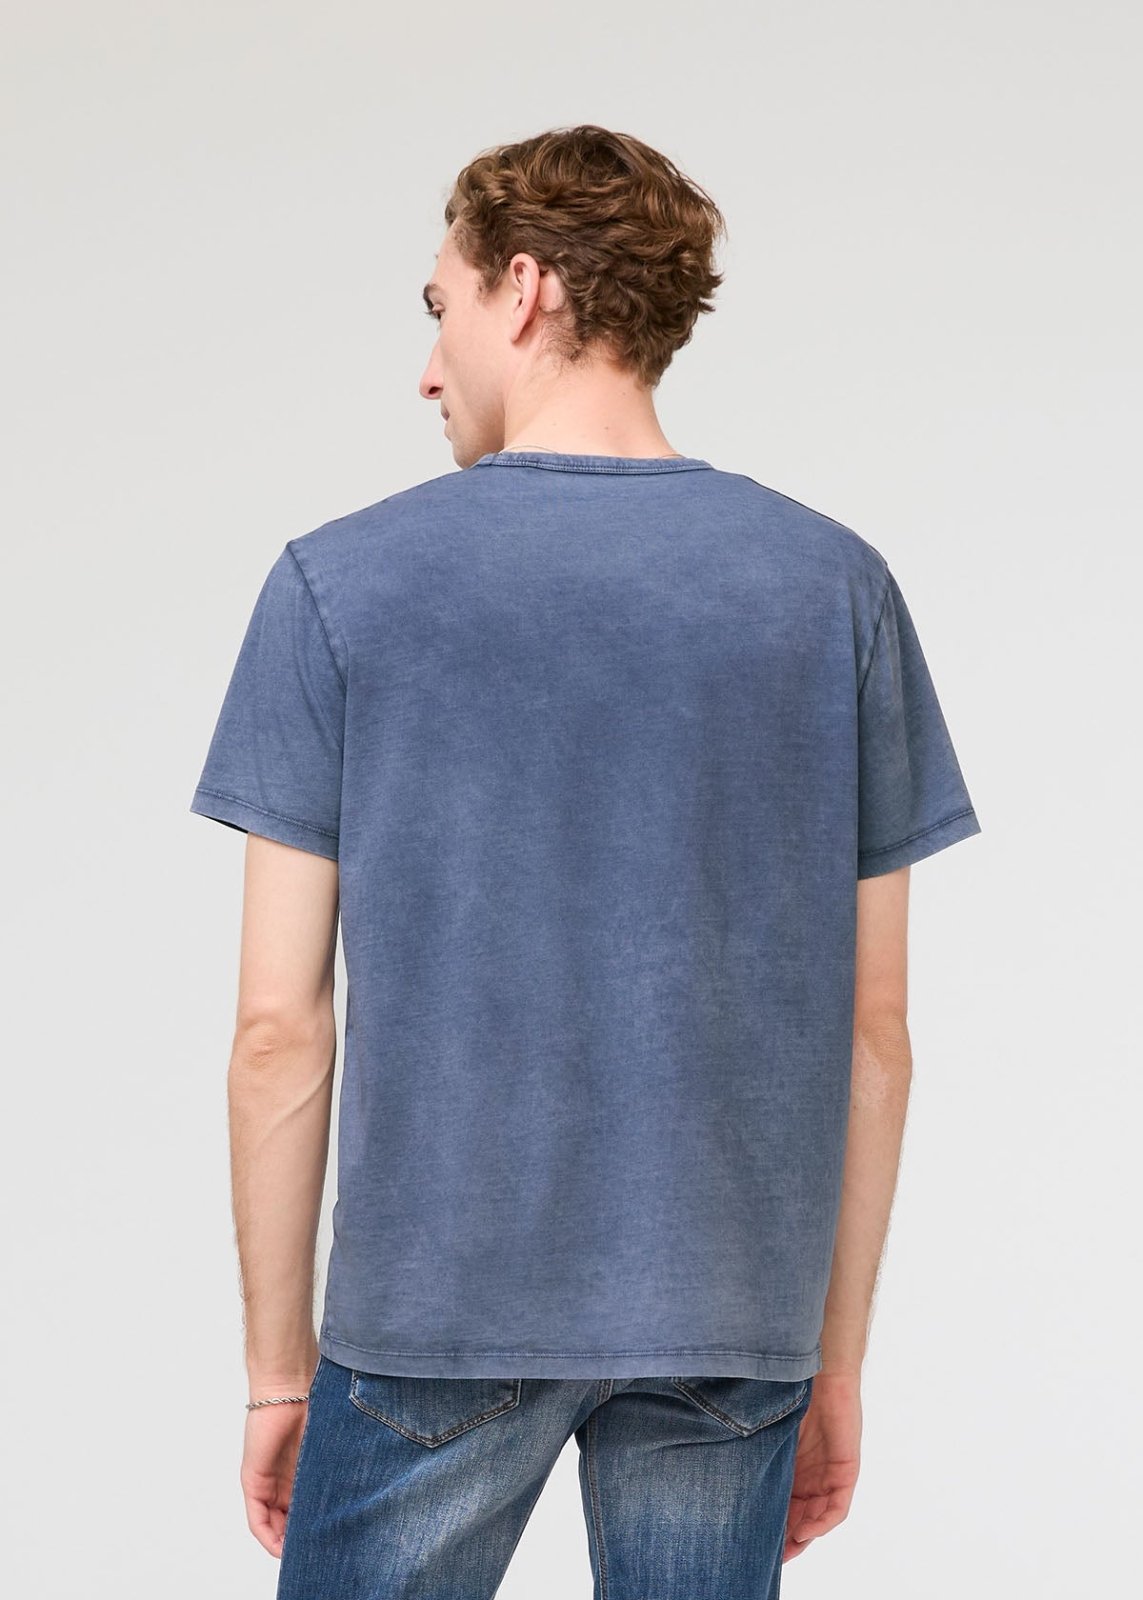 mens pima cotton vintage style blue t-shirt back